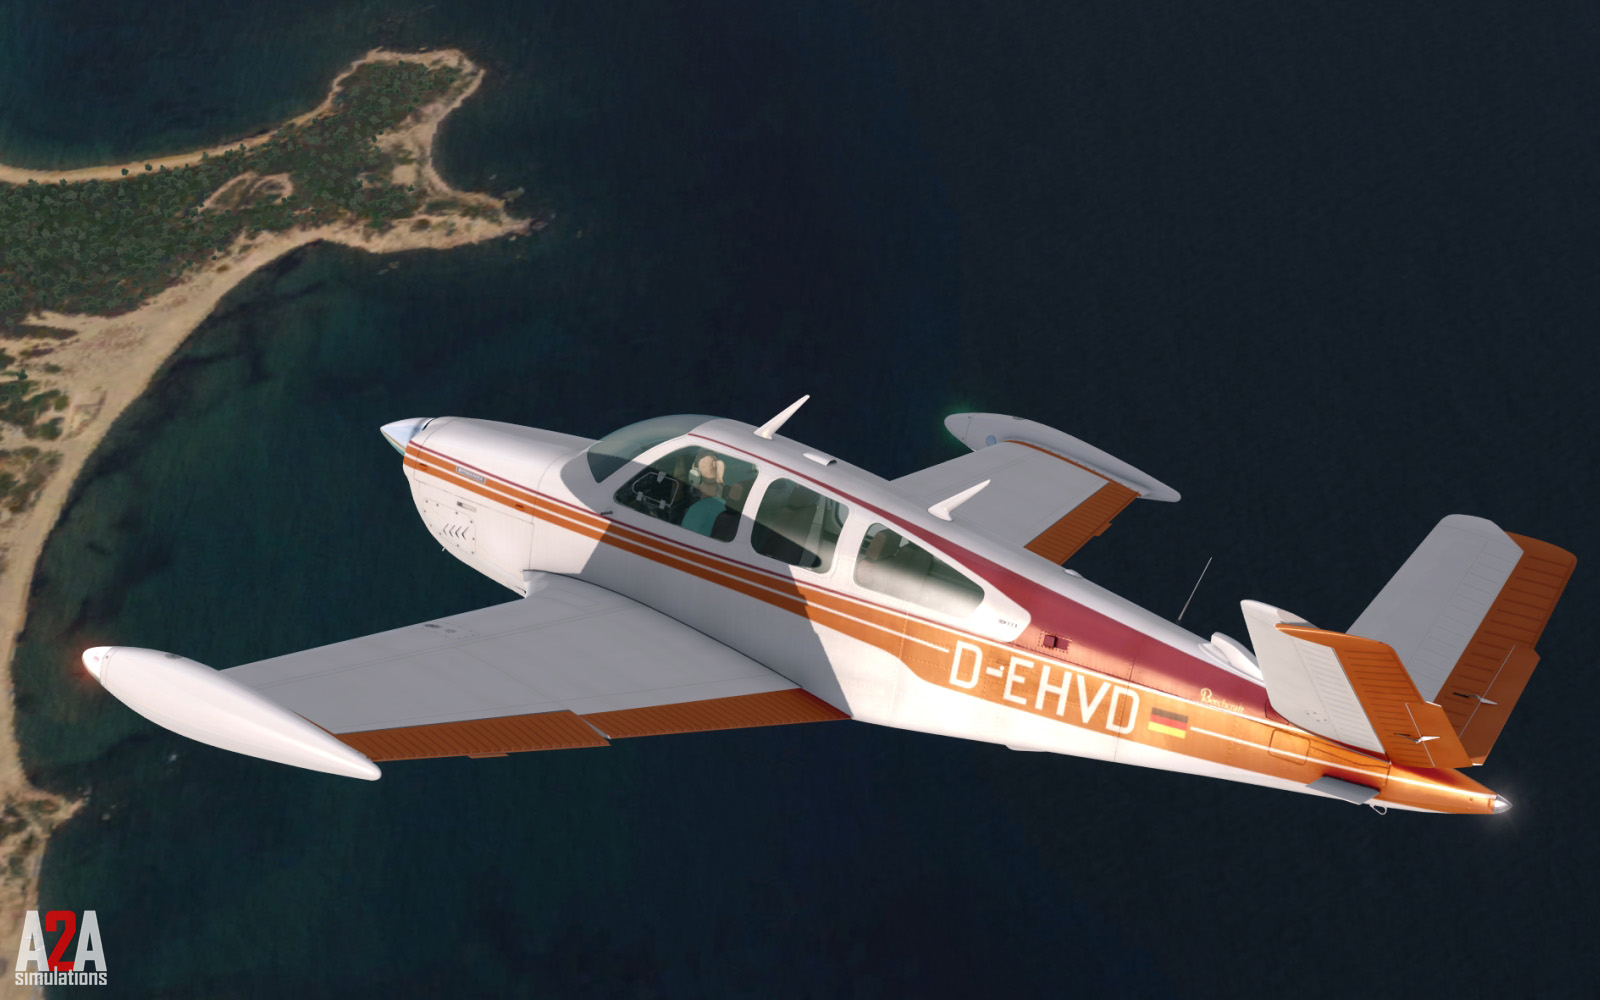 A2A Simulations propose deux mises à jours : Bonanza 35 et Spitfire